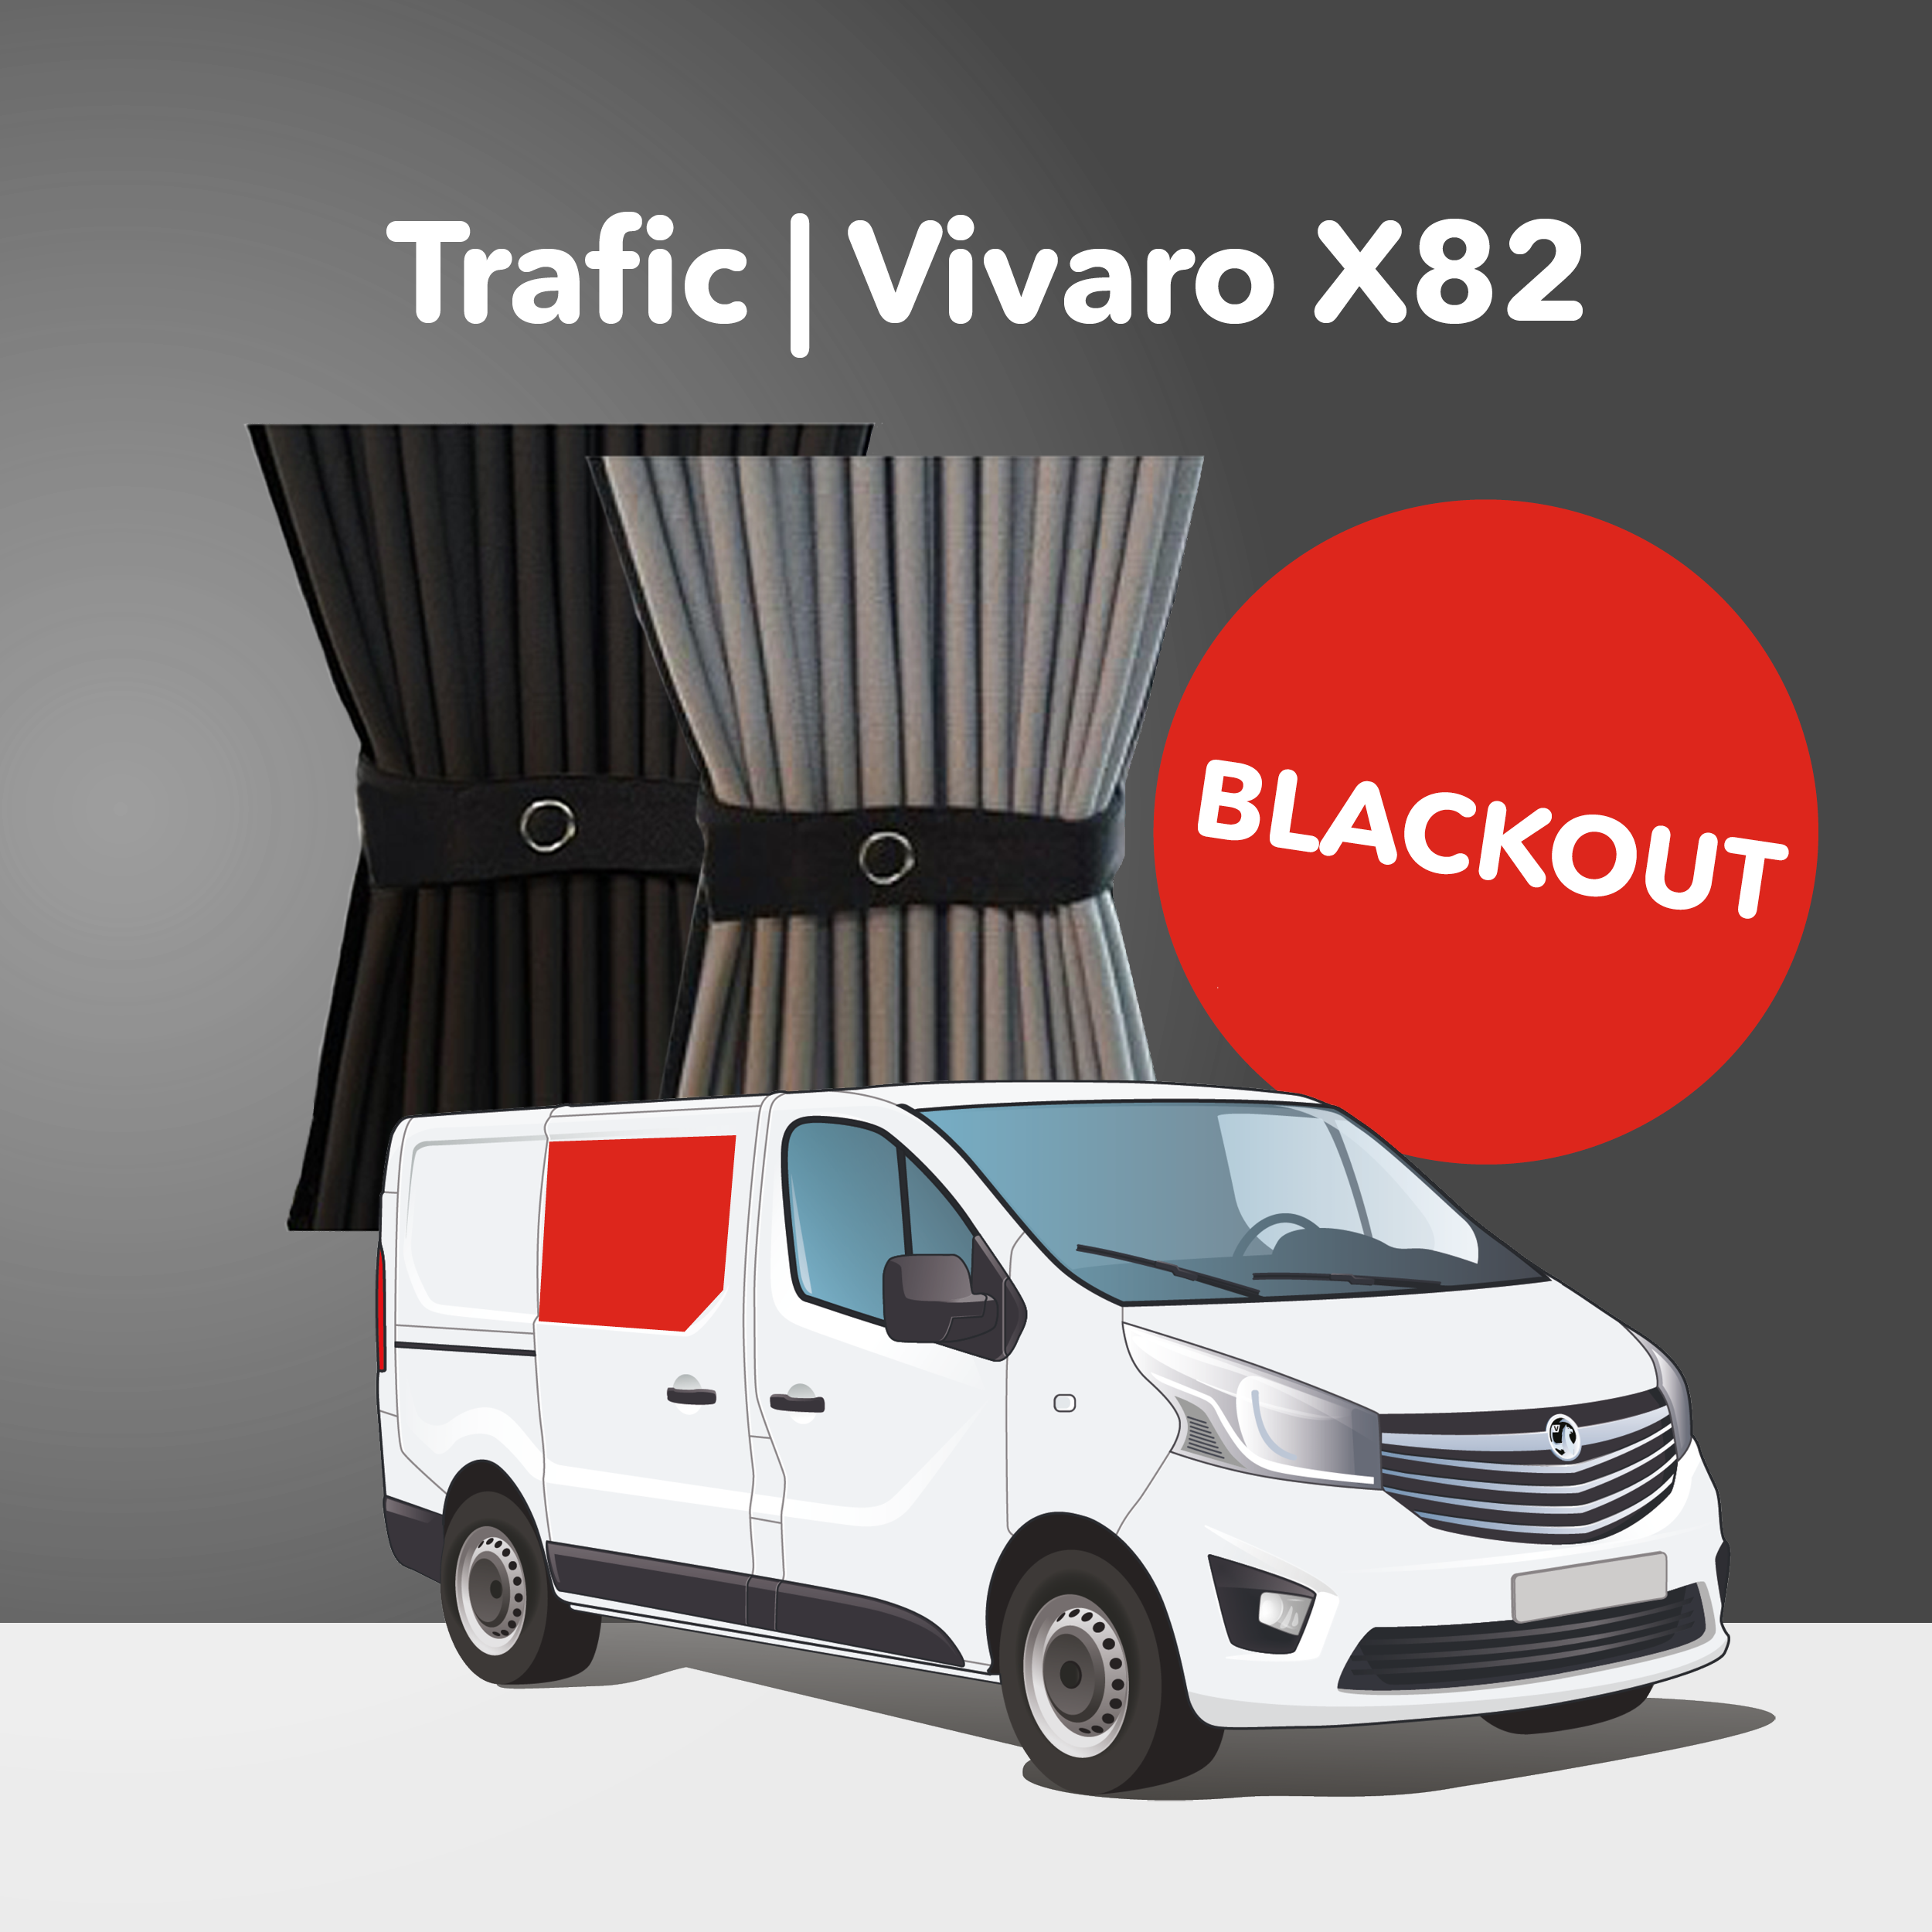 Trafic/Vivaro 2014-2018, Talento 2014+, NV300 2014+ X82 - Mitte Rechts - Schiebetür (Premium-Blackout)